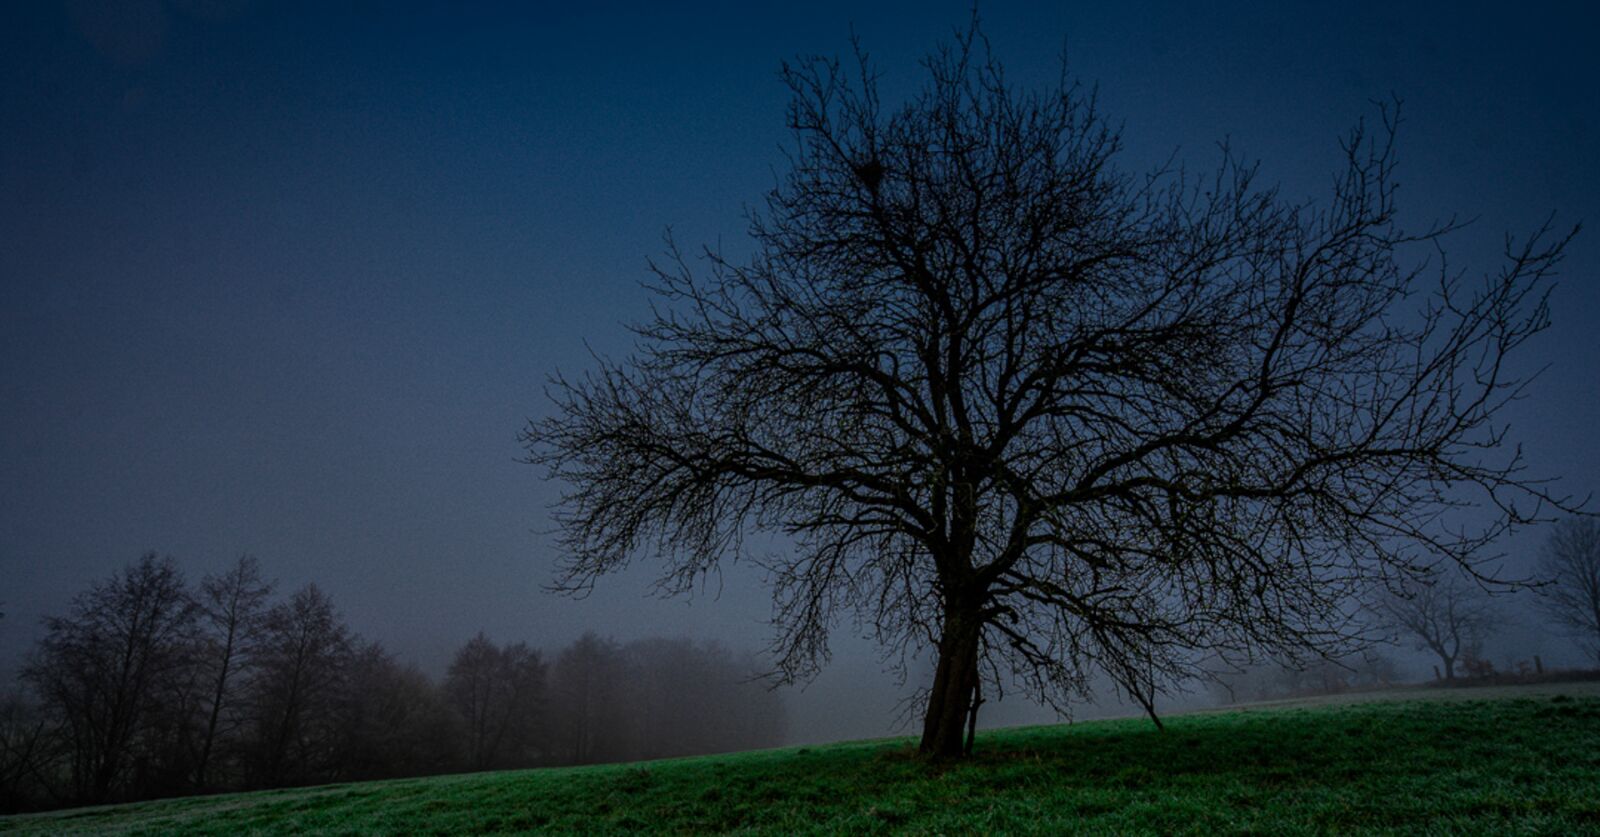 Sony a7 III + Sony Vario-Tessar T* FE 16-35mm F4 ZA OSS sample photo. Tree, fog, forest photography